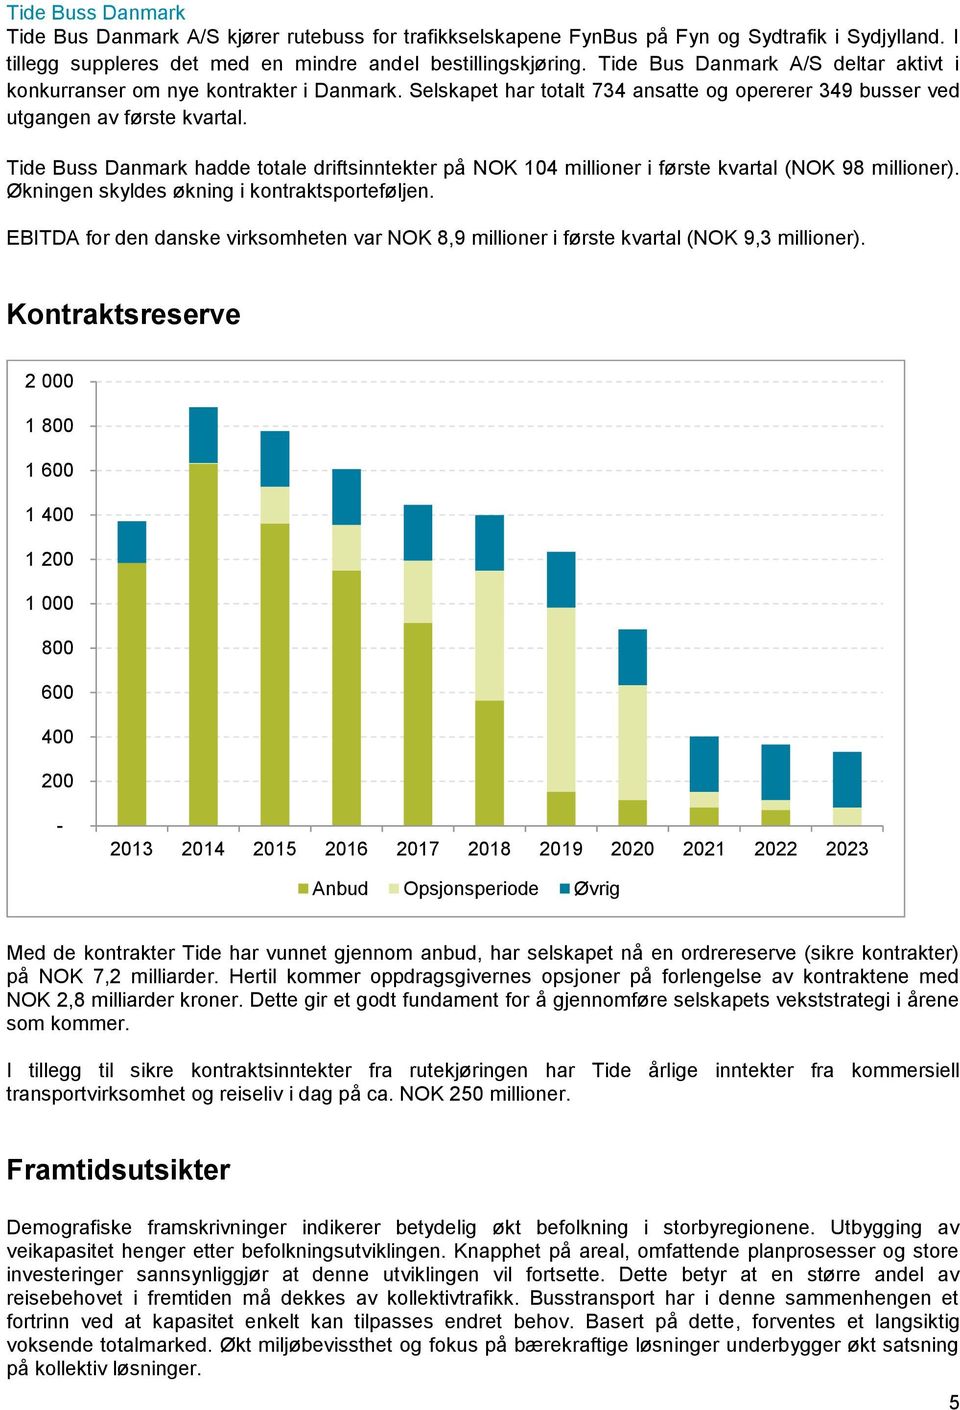 Tide Buss Danmark hadde totale driftsinntekter på NOK 104 millioner i første kvartal (NOK 98 millioner). Økningen skyldes økning i kontraktsporteføljen.